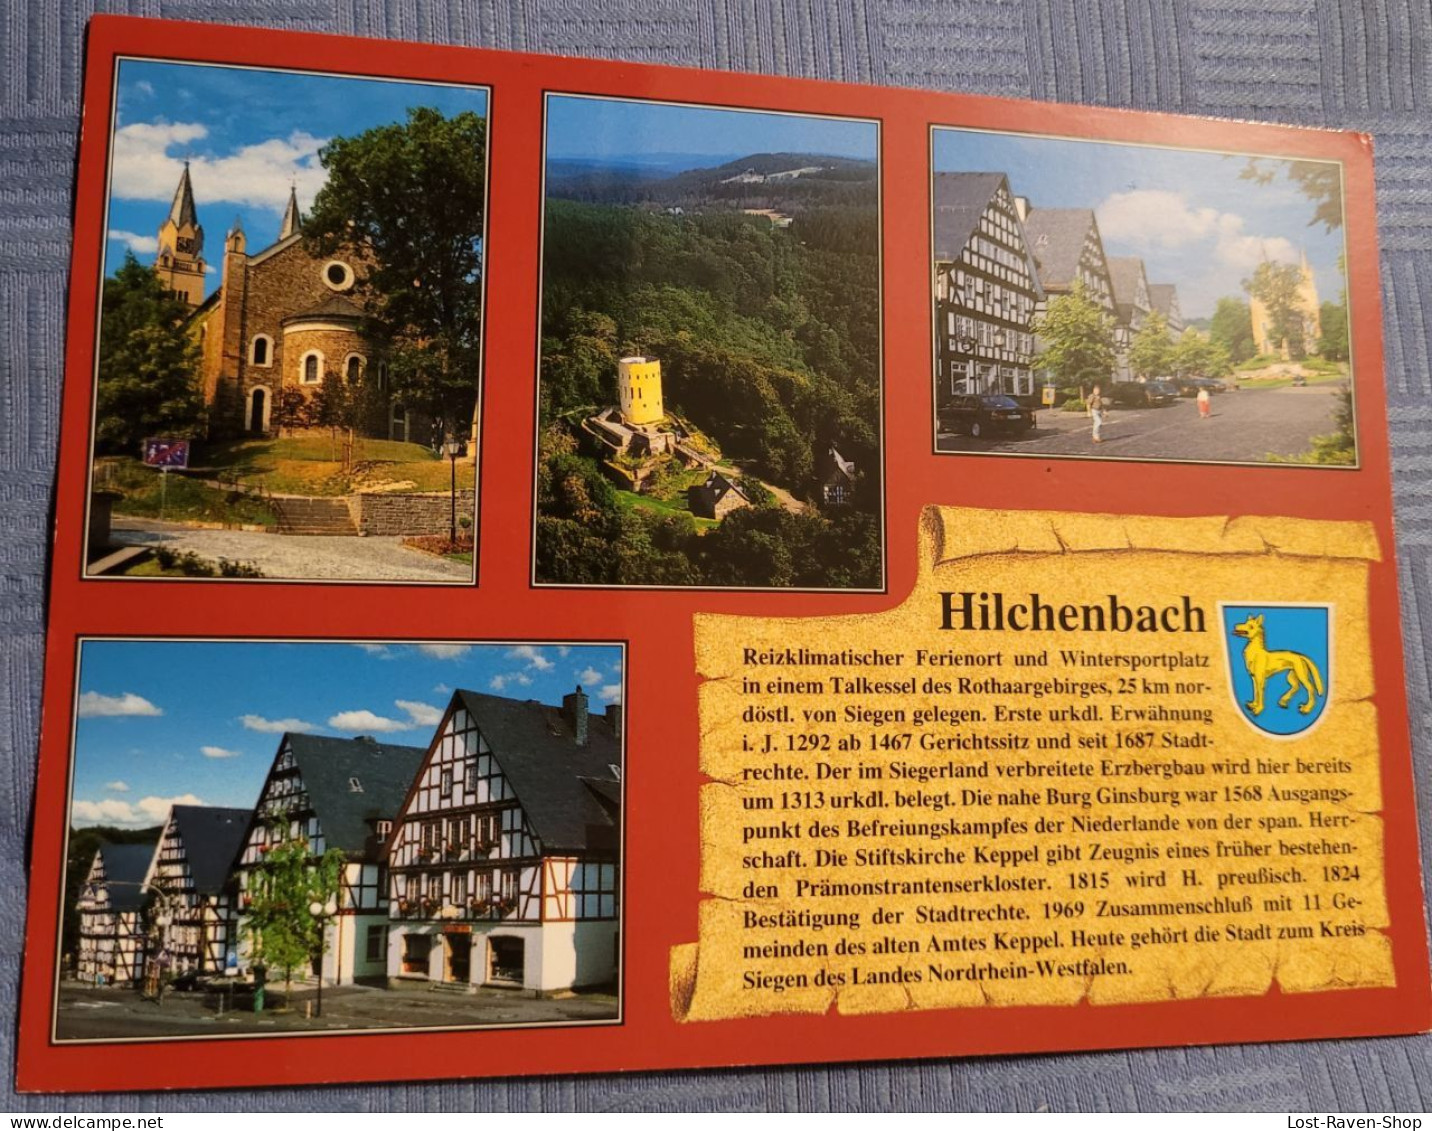 Hilchenbach - Hilchenbach